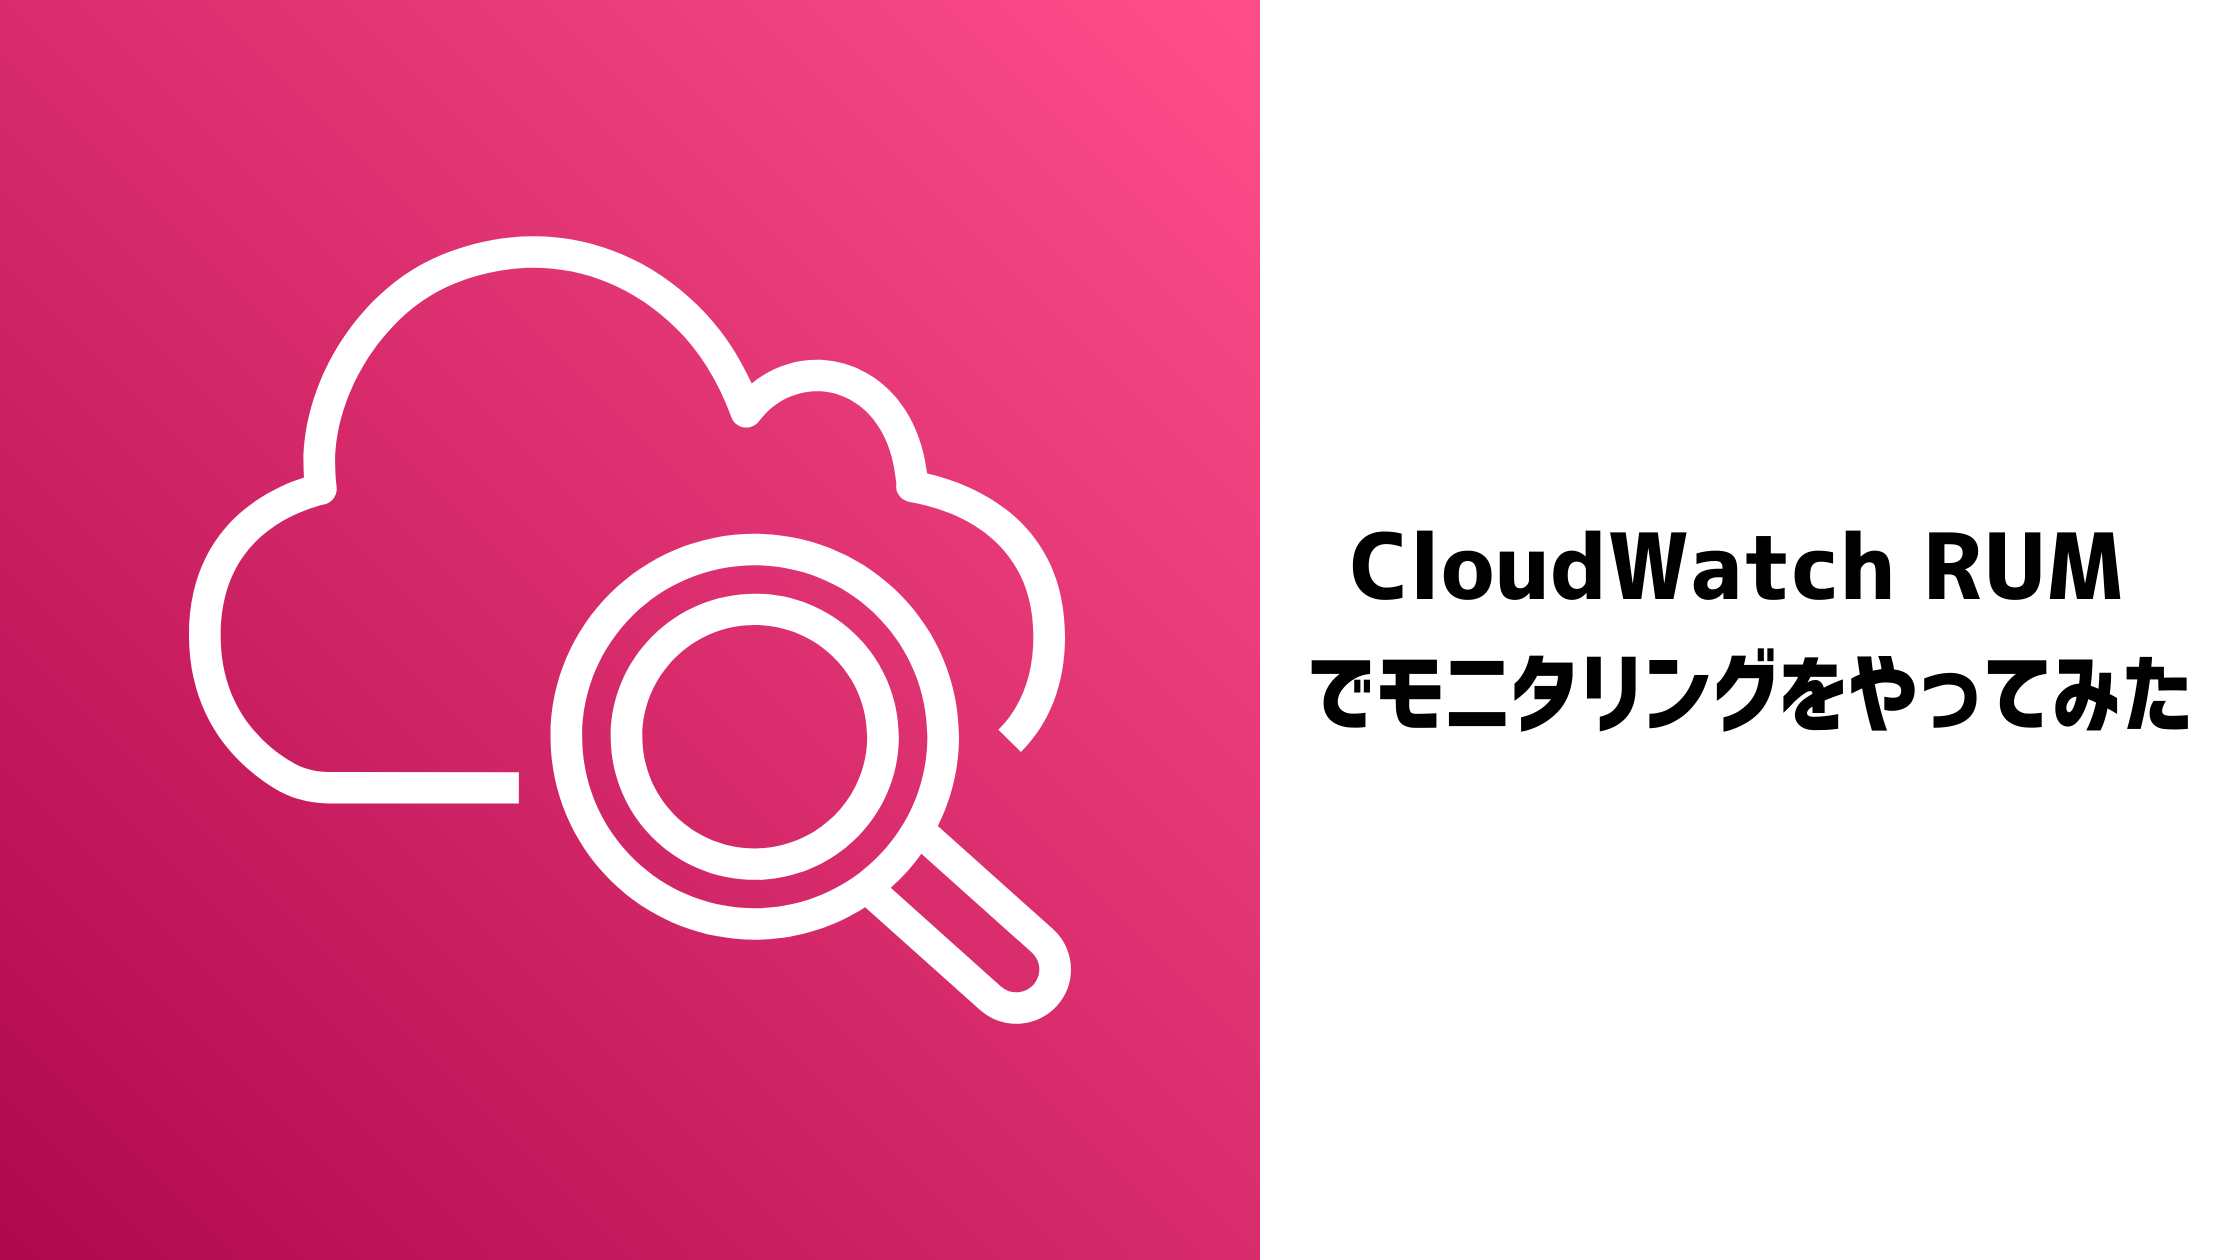 Hubspot CMS で作った Web サイトを CloudWatch RUM でモニタリングしてみる